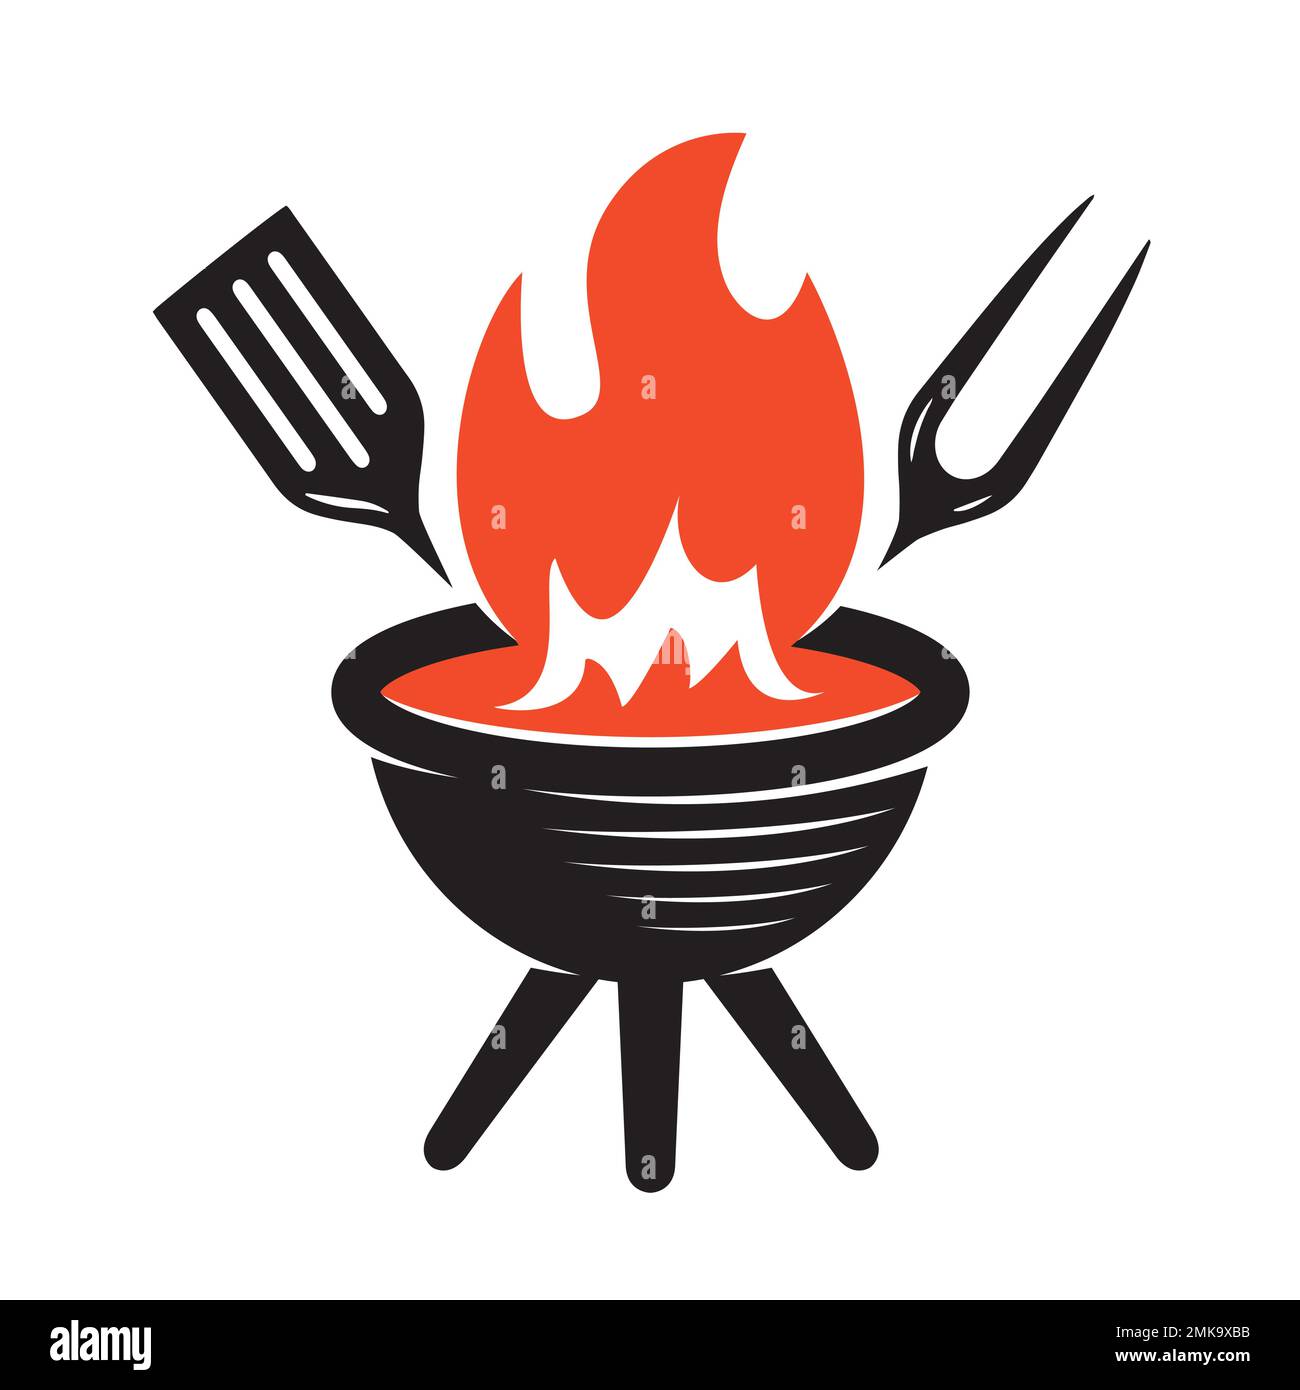 Einfacher BBQ-Grill mit Symbolsymbol. Barbecue-Holzkohle, Badge für die Küche im Freien. Logo für Restaurant- oder Steakhouse-Menü Stock Vektor